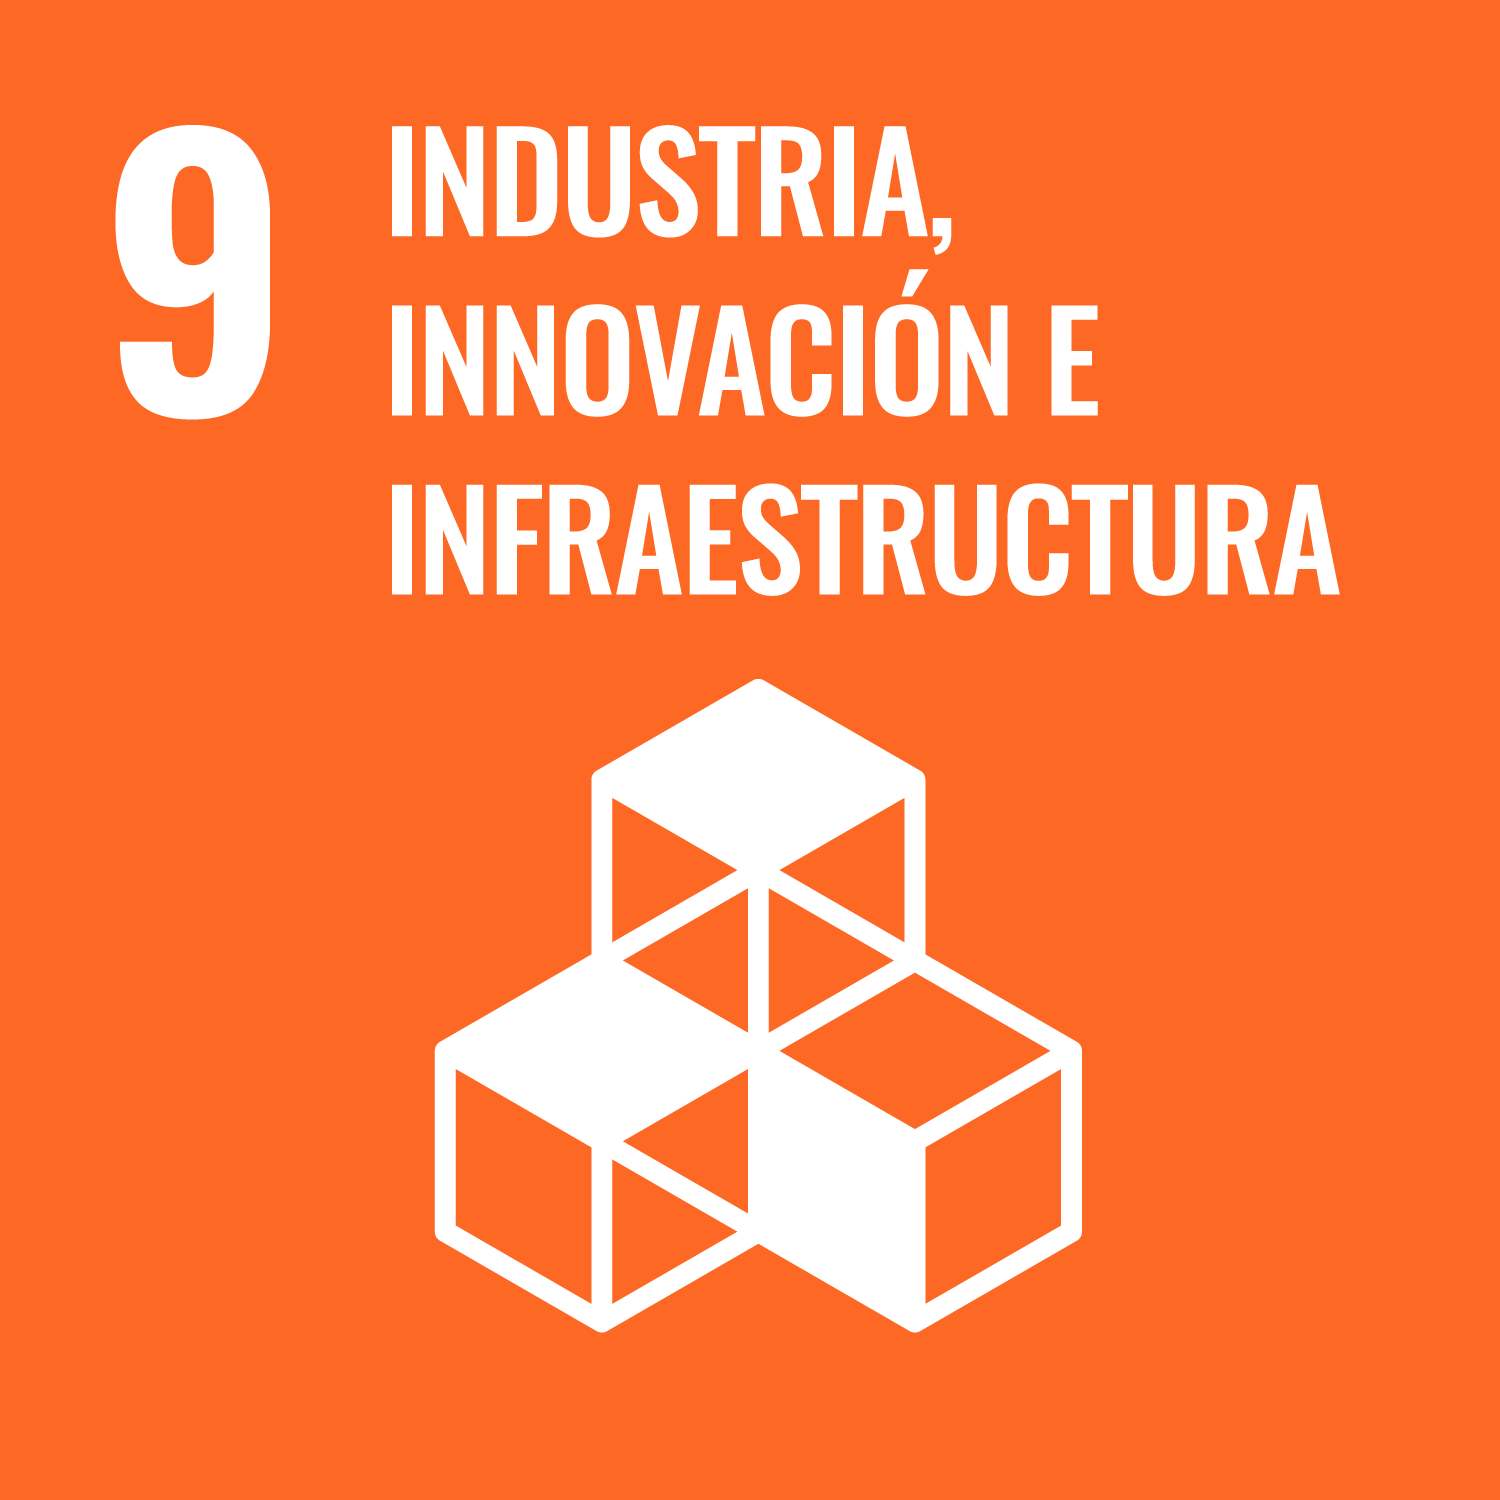 ODS 9</p>
<h5>Industria, innovación<br />
e infraestructura</h5>
<p>